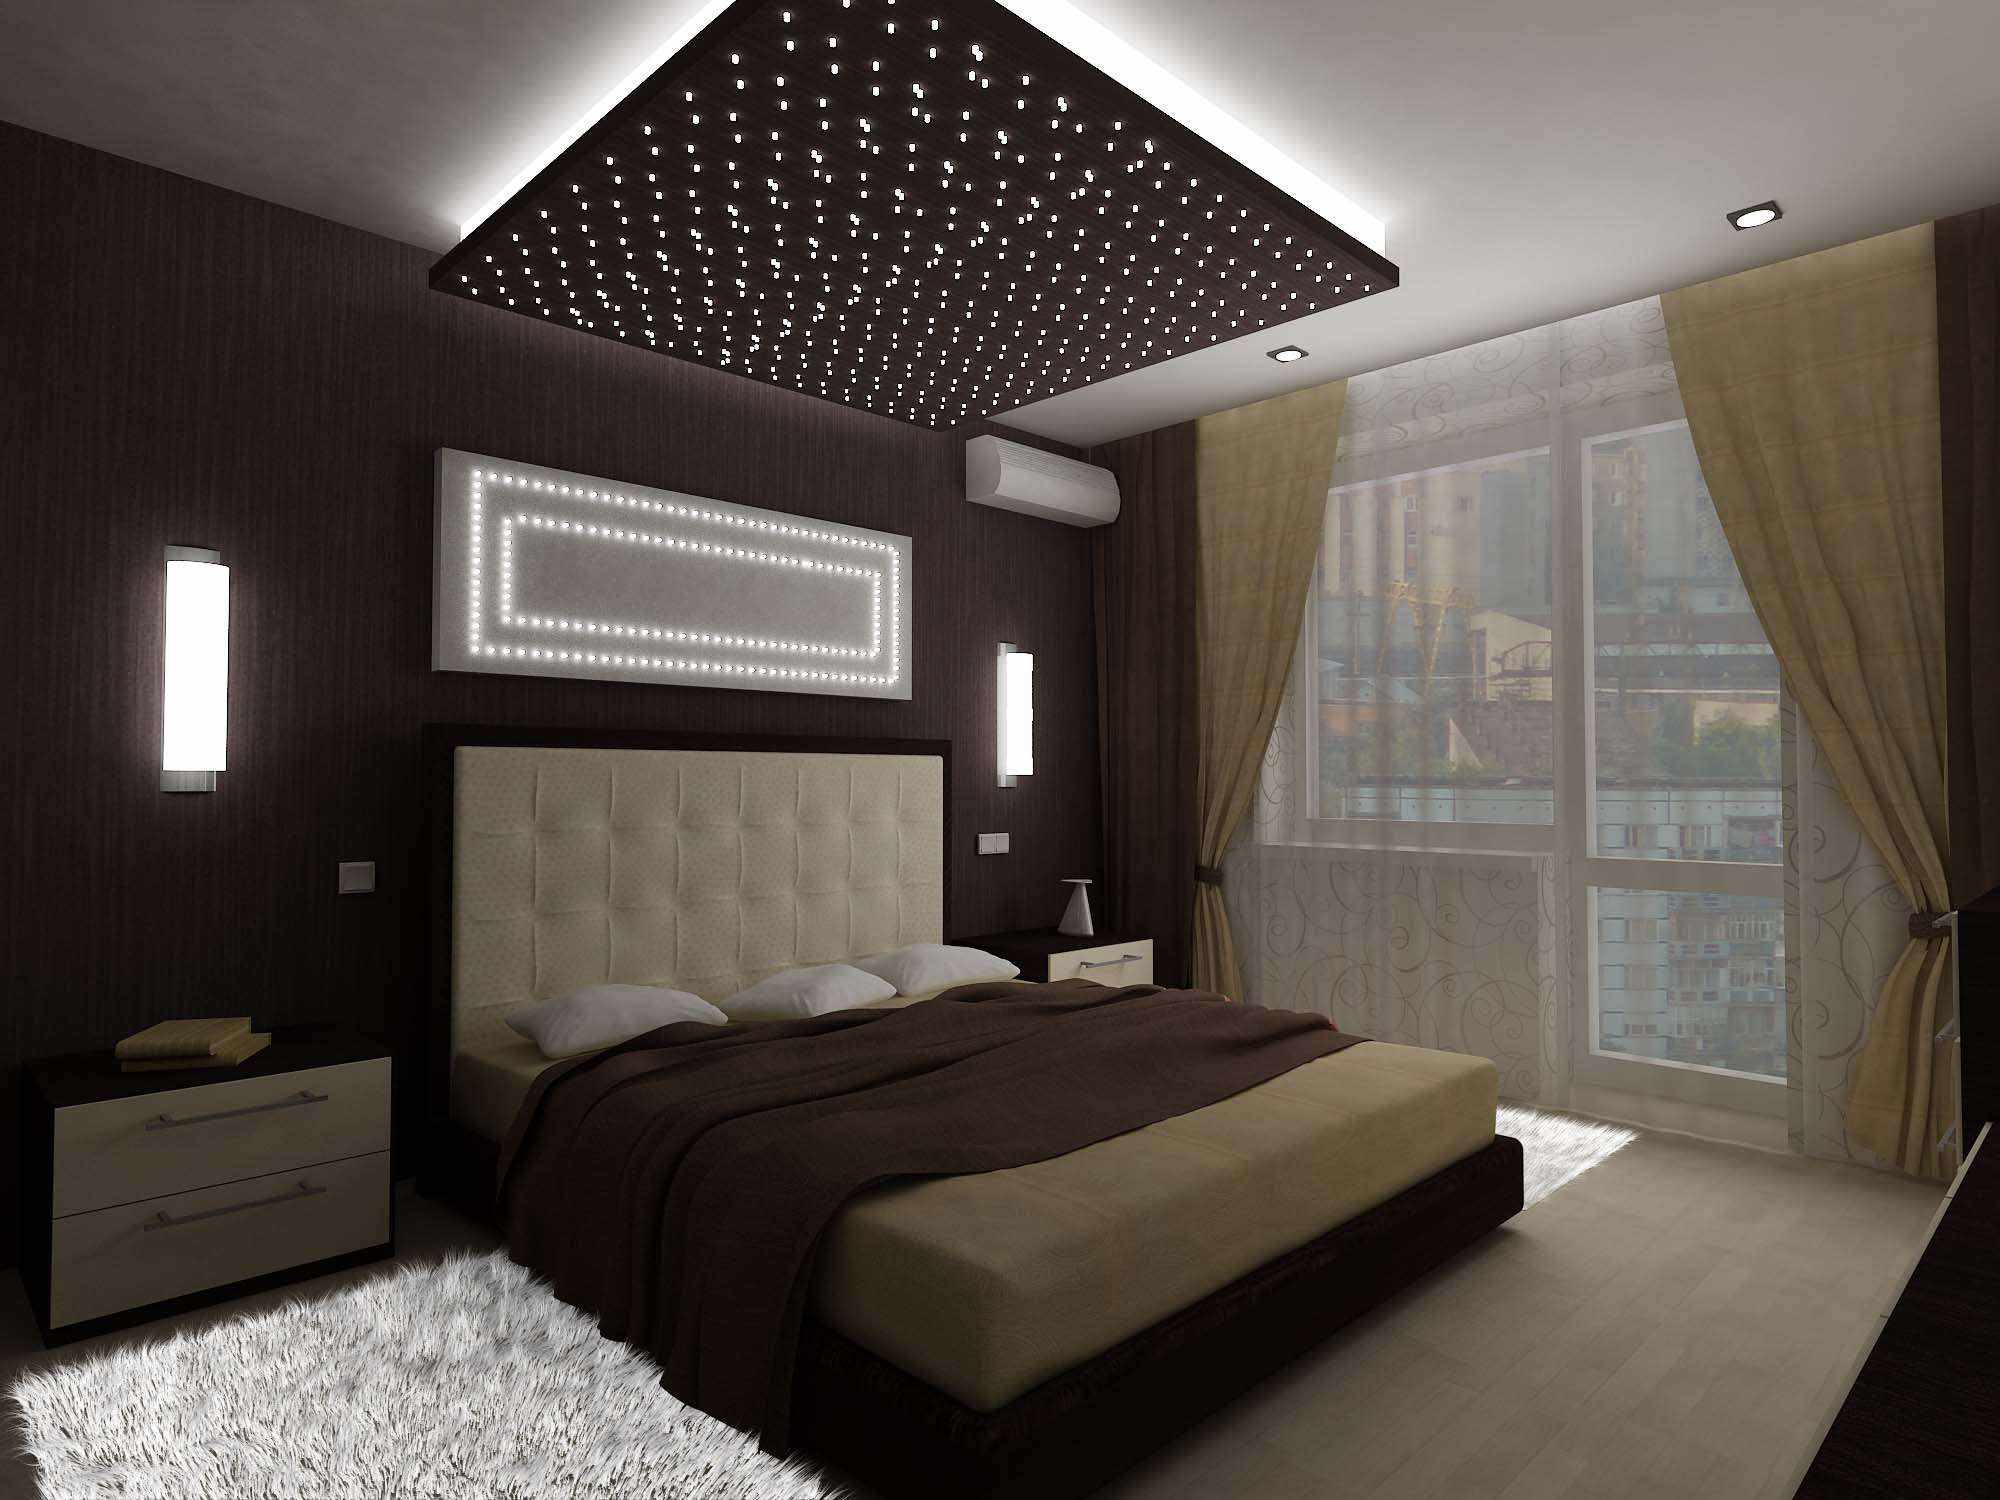 רעיון של עיצוב יוצא דופן של חדר שינה של 15 מ